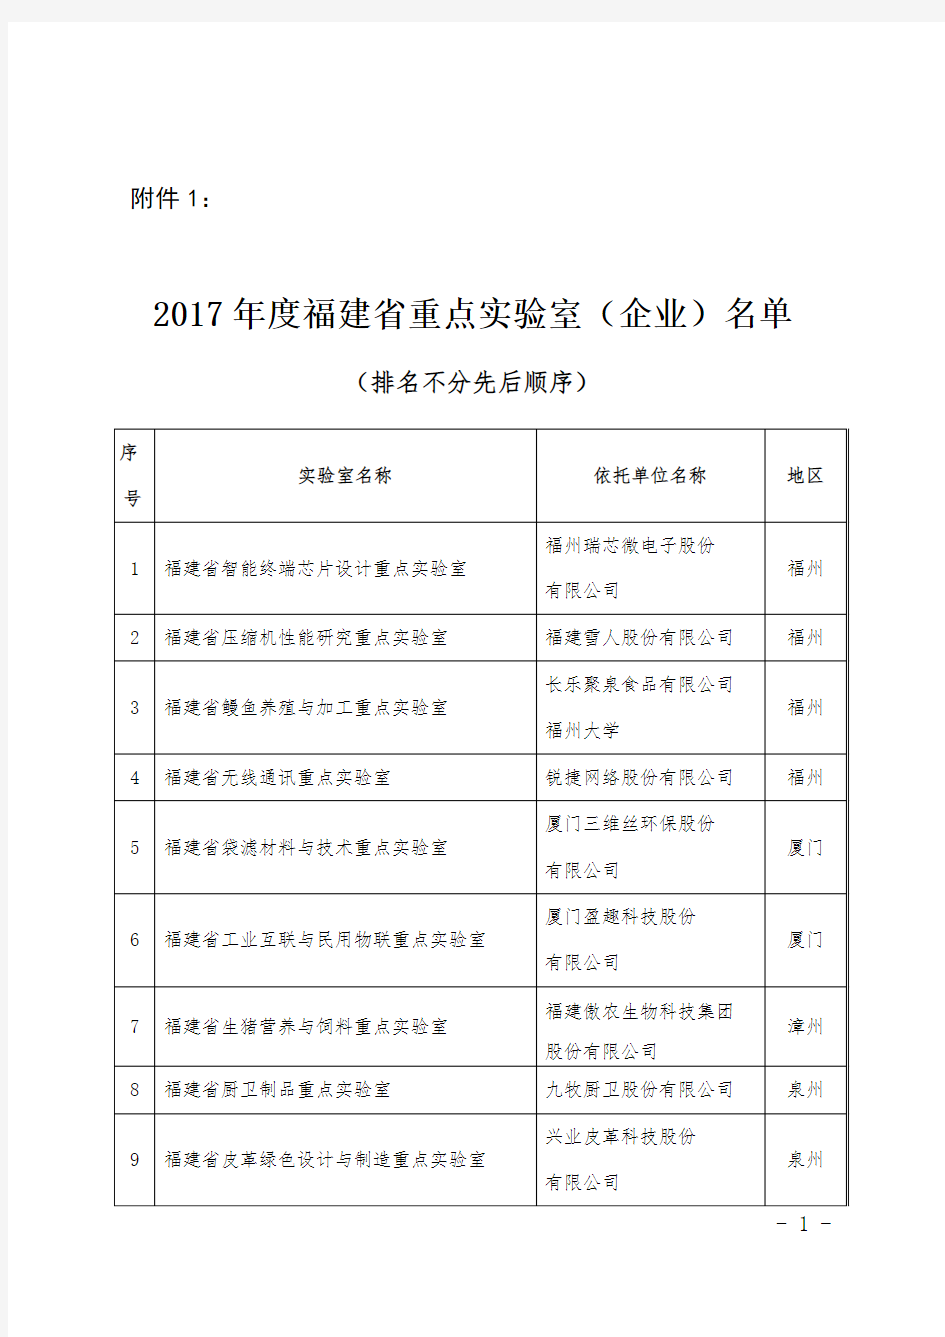 2017年度福建省重点实验室(企业)名单